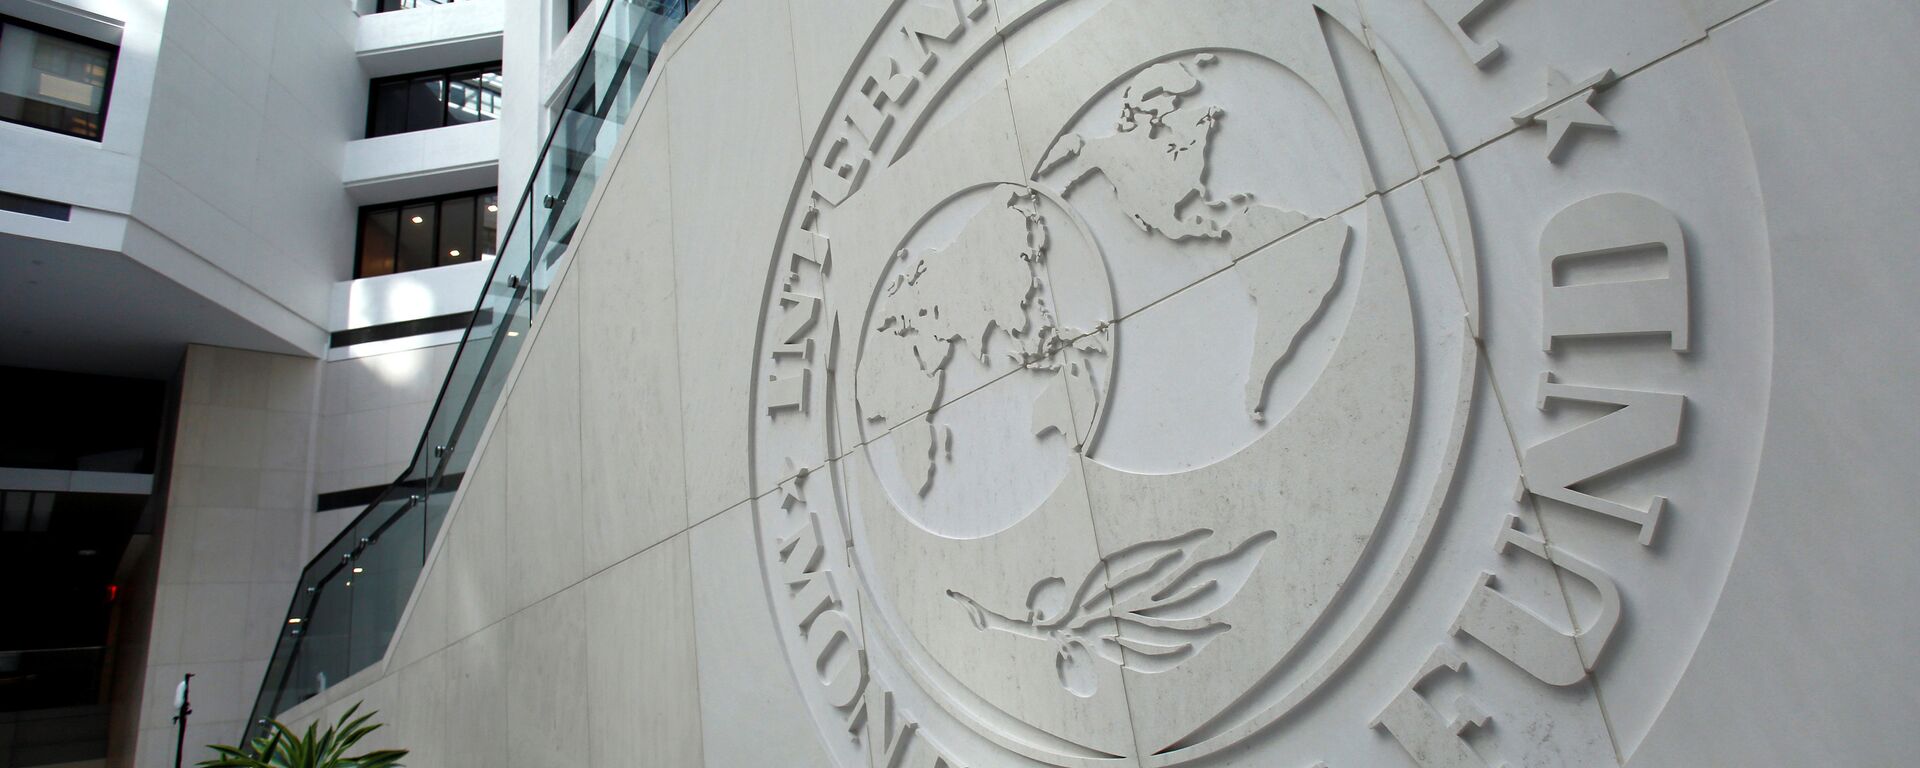 Зграда Међународног монетарног фонда у Вашингтону - Sputnik Србија, 1920, 18.08.2021